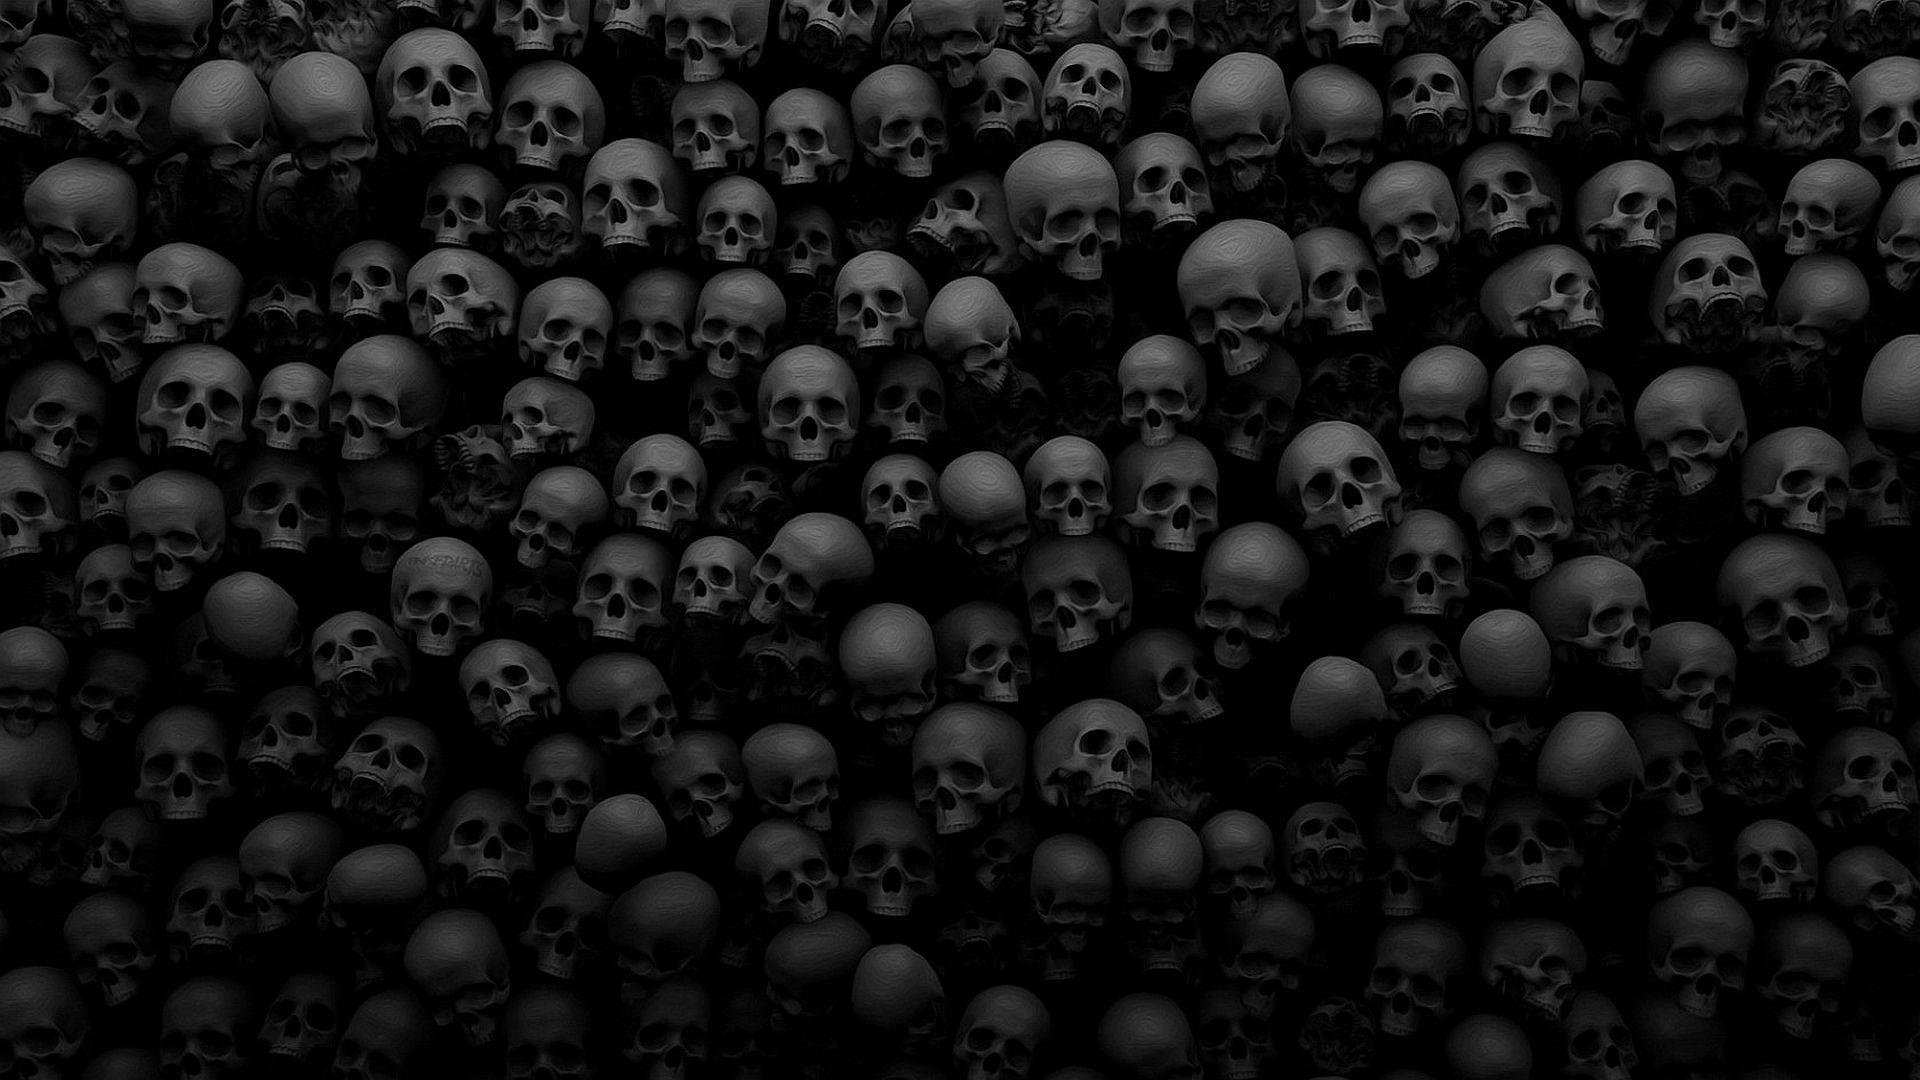 Dark Skull Wallpaper. Skulls. Skull wallpaper